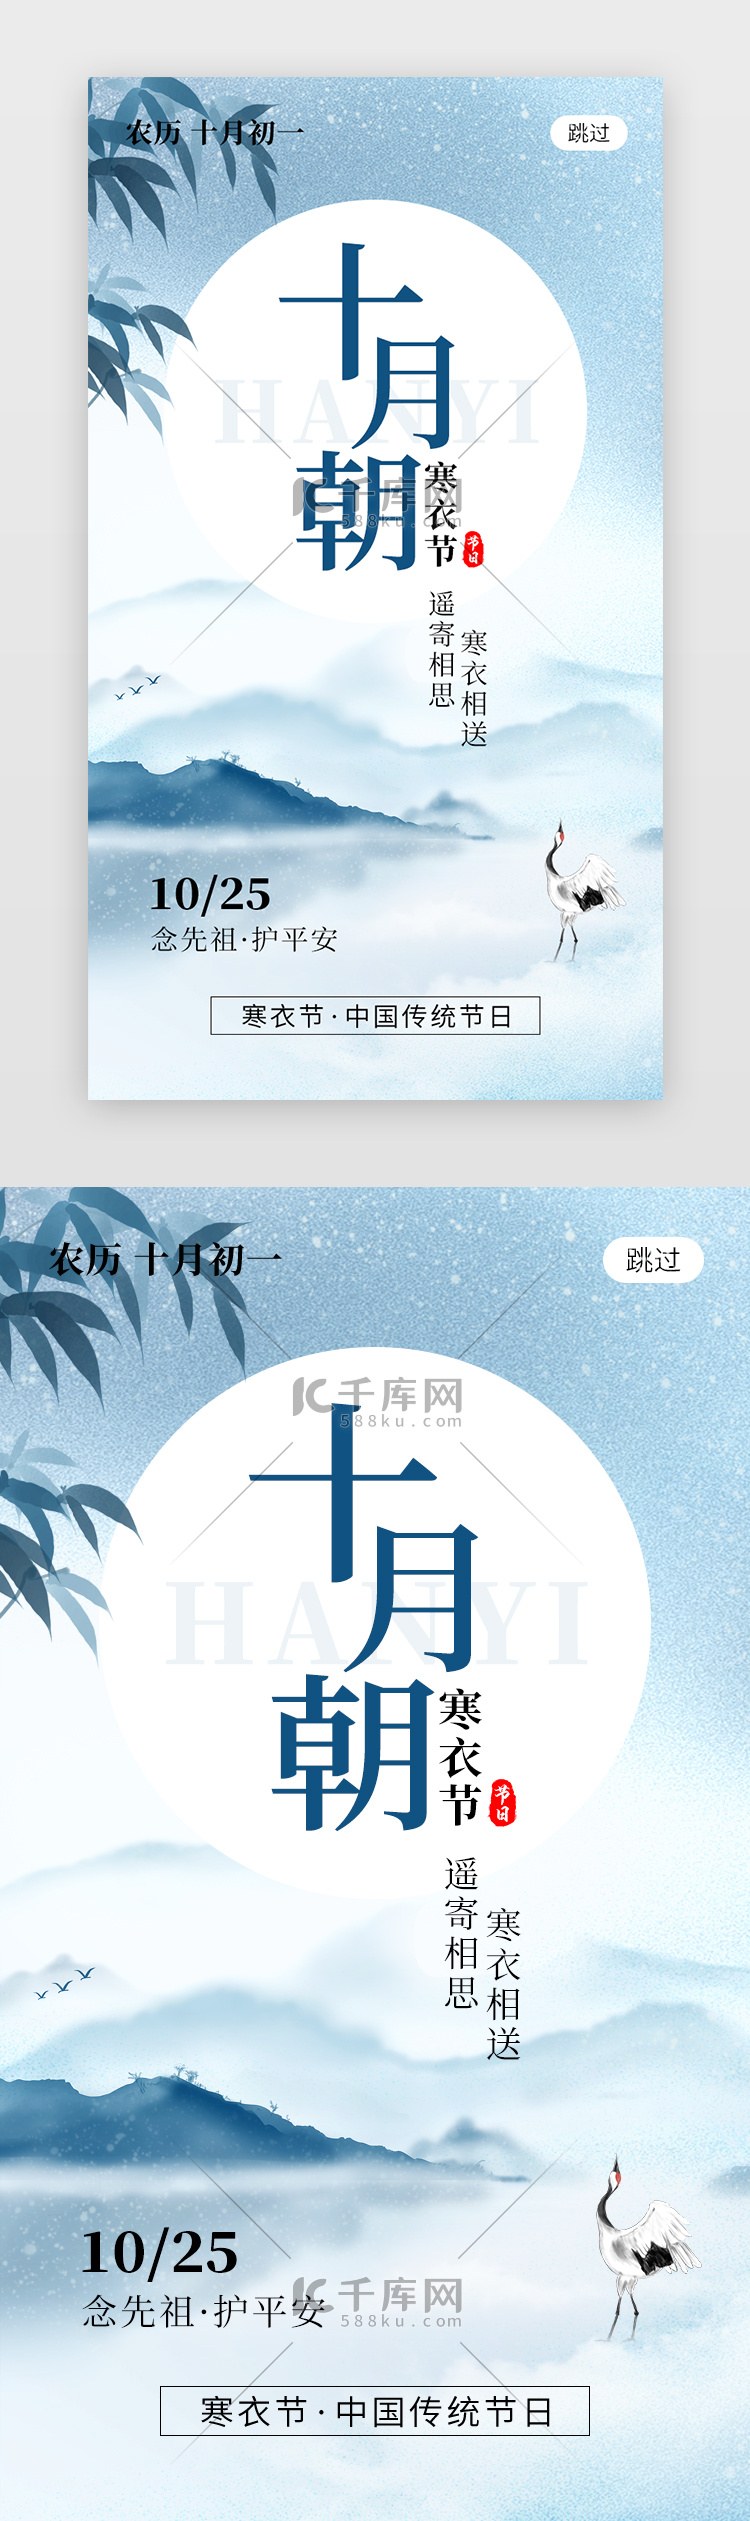 十月朝寒衣节app闪屏创意蓝色仙鹤